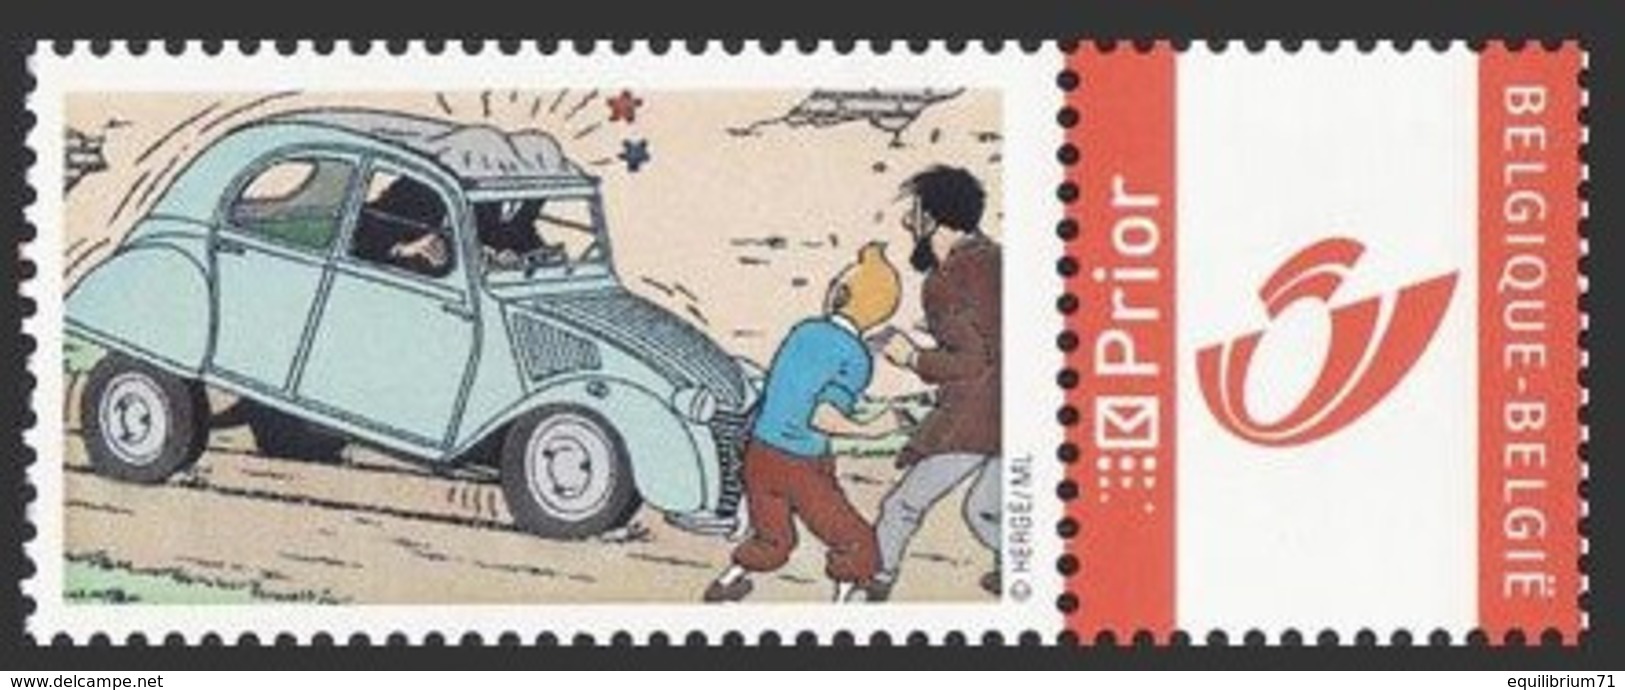 DUOSTAMP** / MYSTAMP**-  Tintin - Ancêtres  / Kuifje – Oldtimers  - (Hergé) - Bandes Dessinées